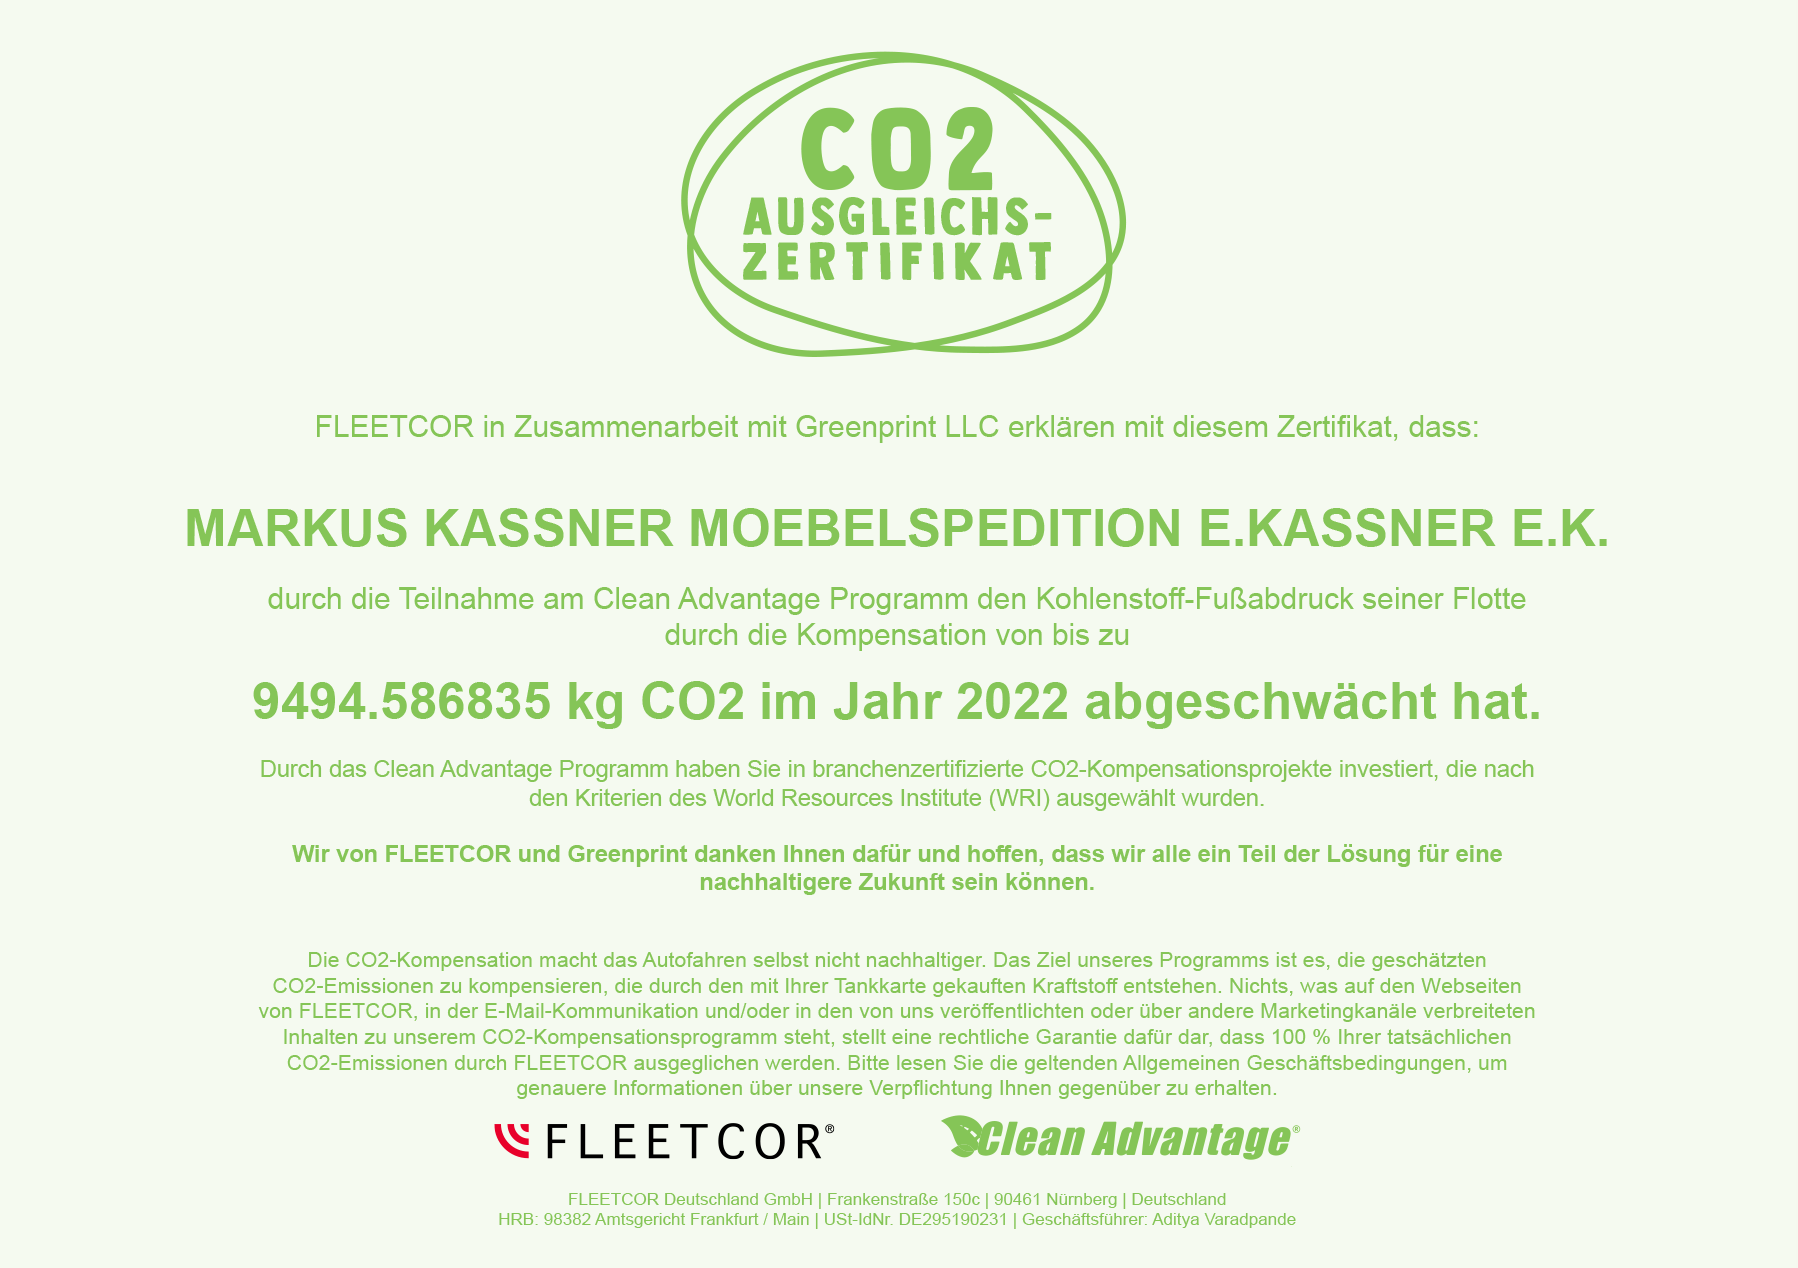 CO2 Ausgleichszertifikat 2022 - Möbelspedition Kassner